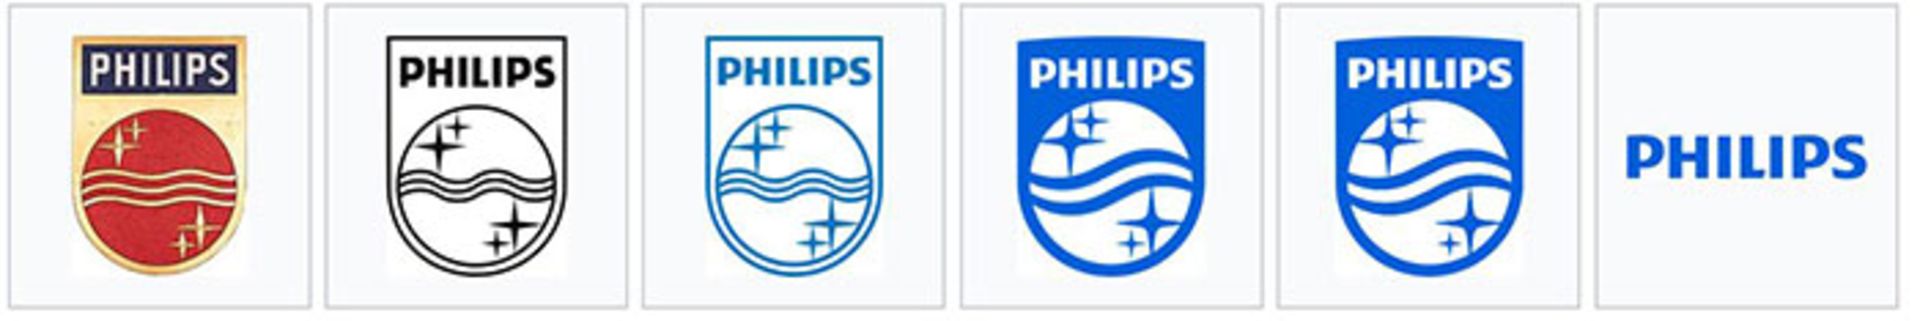 مرجع متخصصين ايران فيليپس / Philips